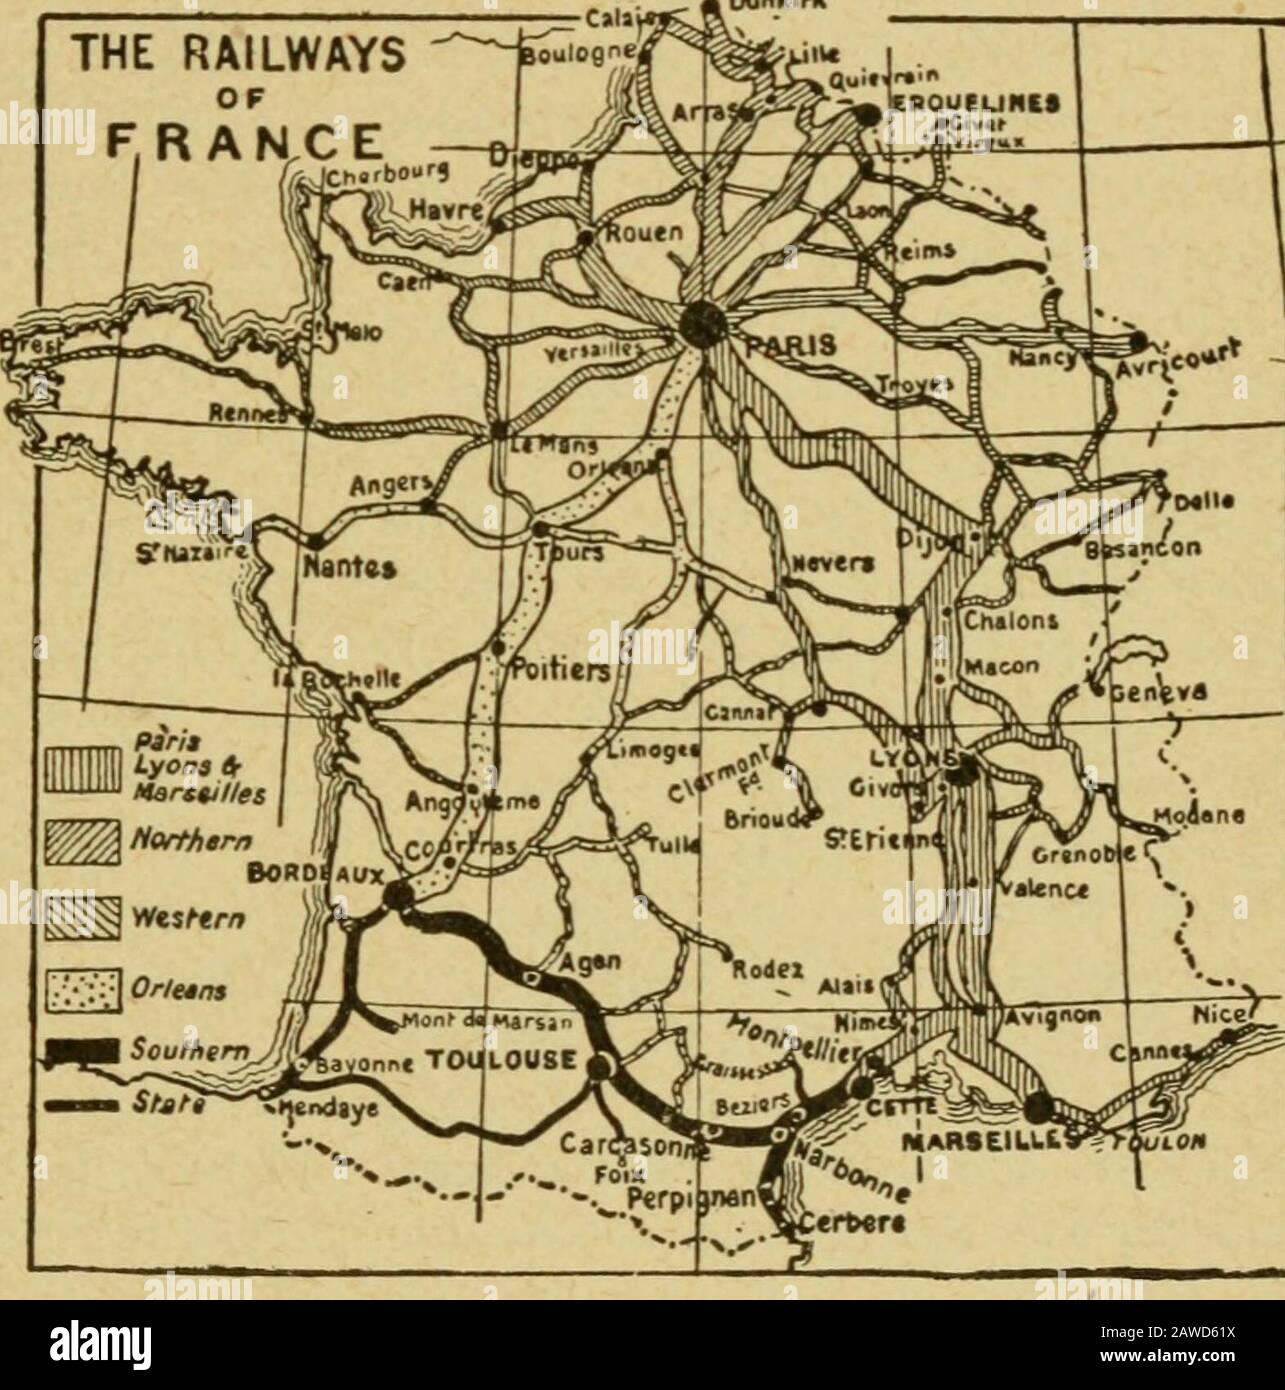 La geografía internacional . d en 12 horas; pasa por Dijon, Lyon, y  Tarascon, la junc-ción de Nimes, donde los trenes circulan en las líneas de  la Compañía Cette Sur, y justo